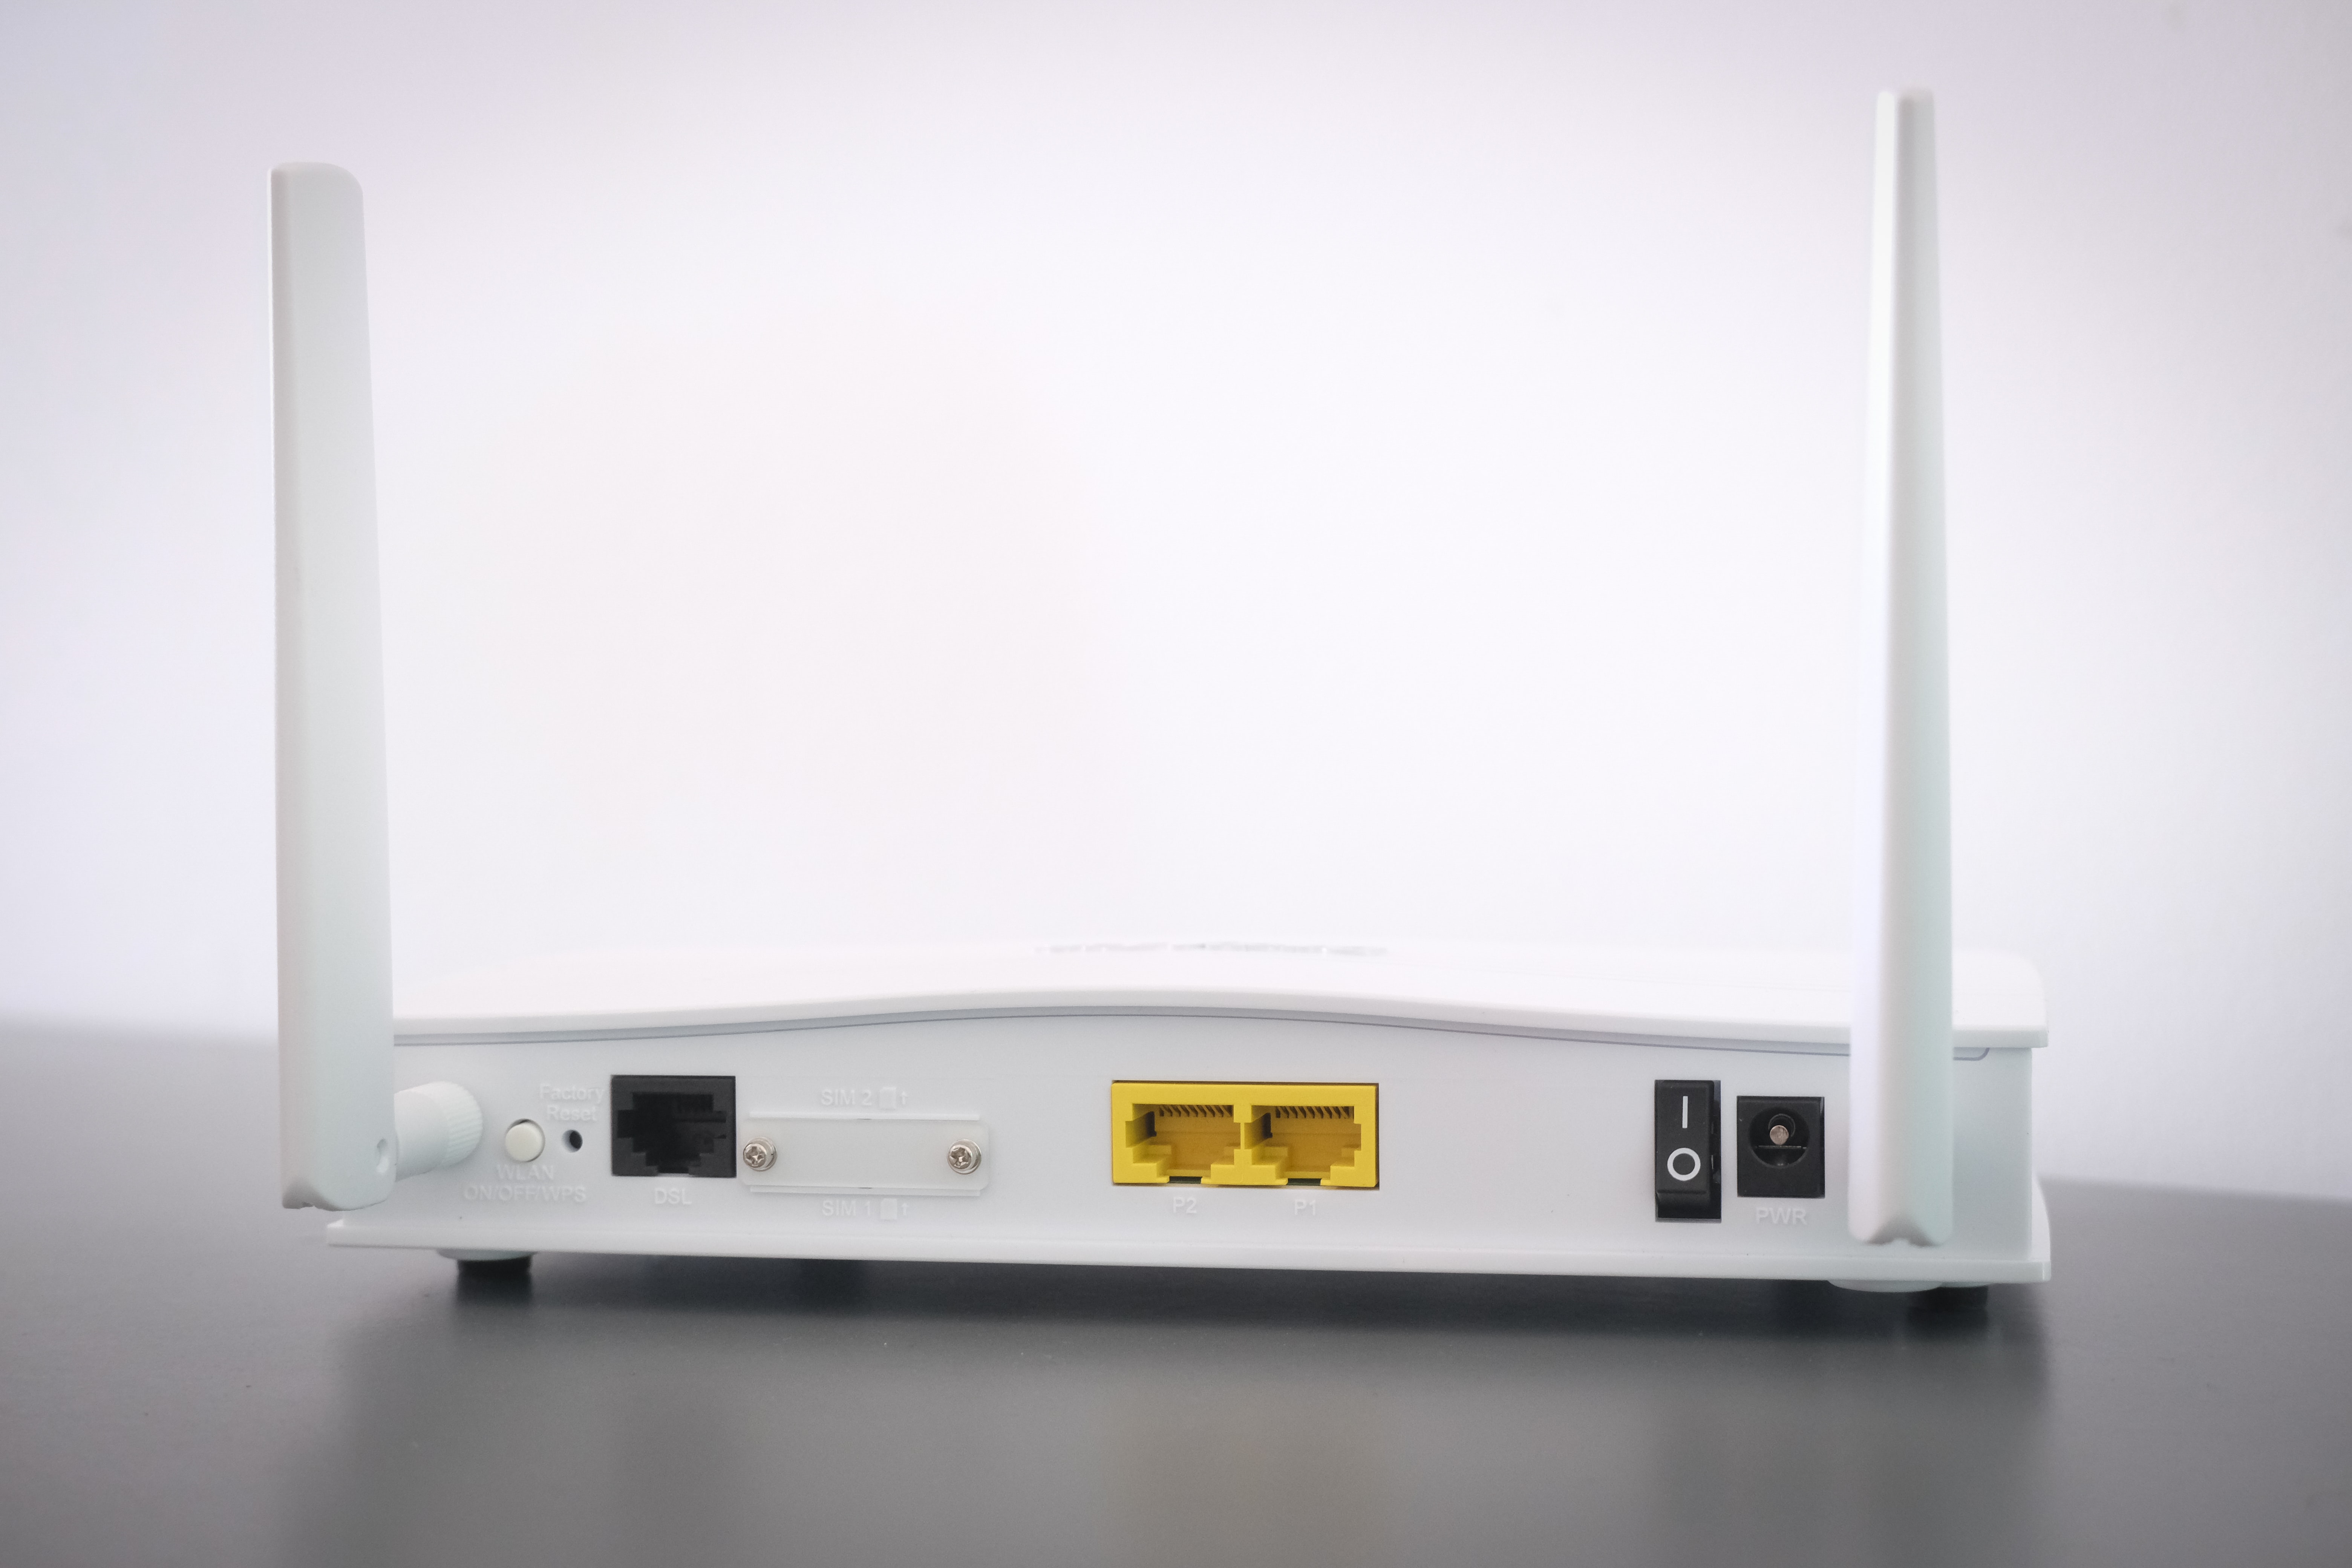 Aquí una serie de tips para saber dónde poner el router del internet y no afectar la señal.